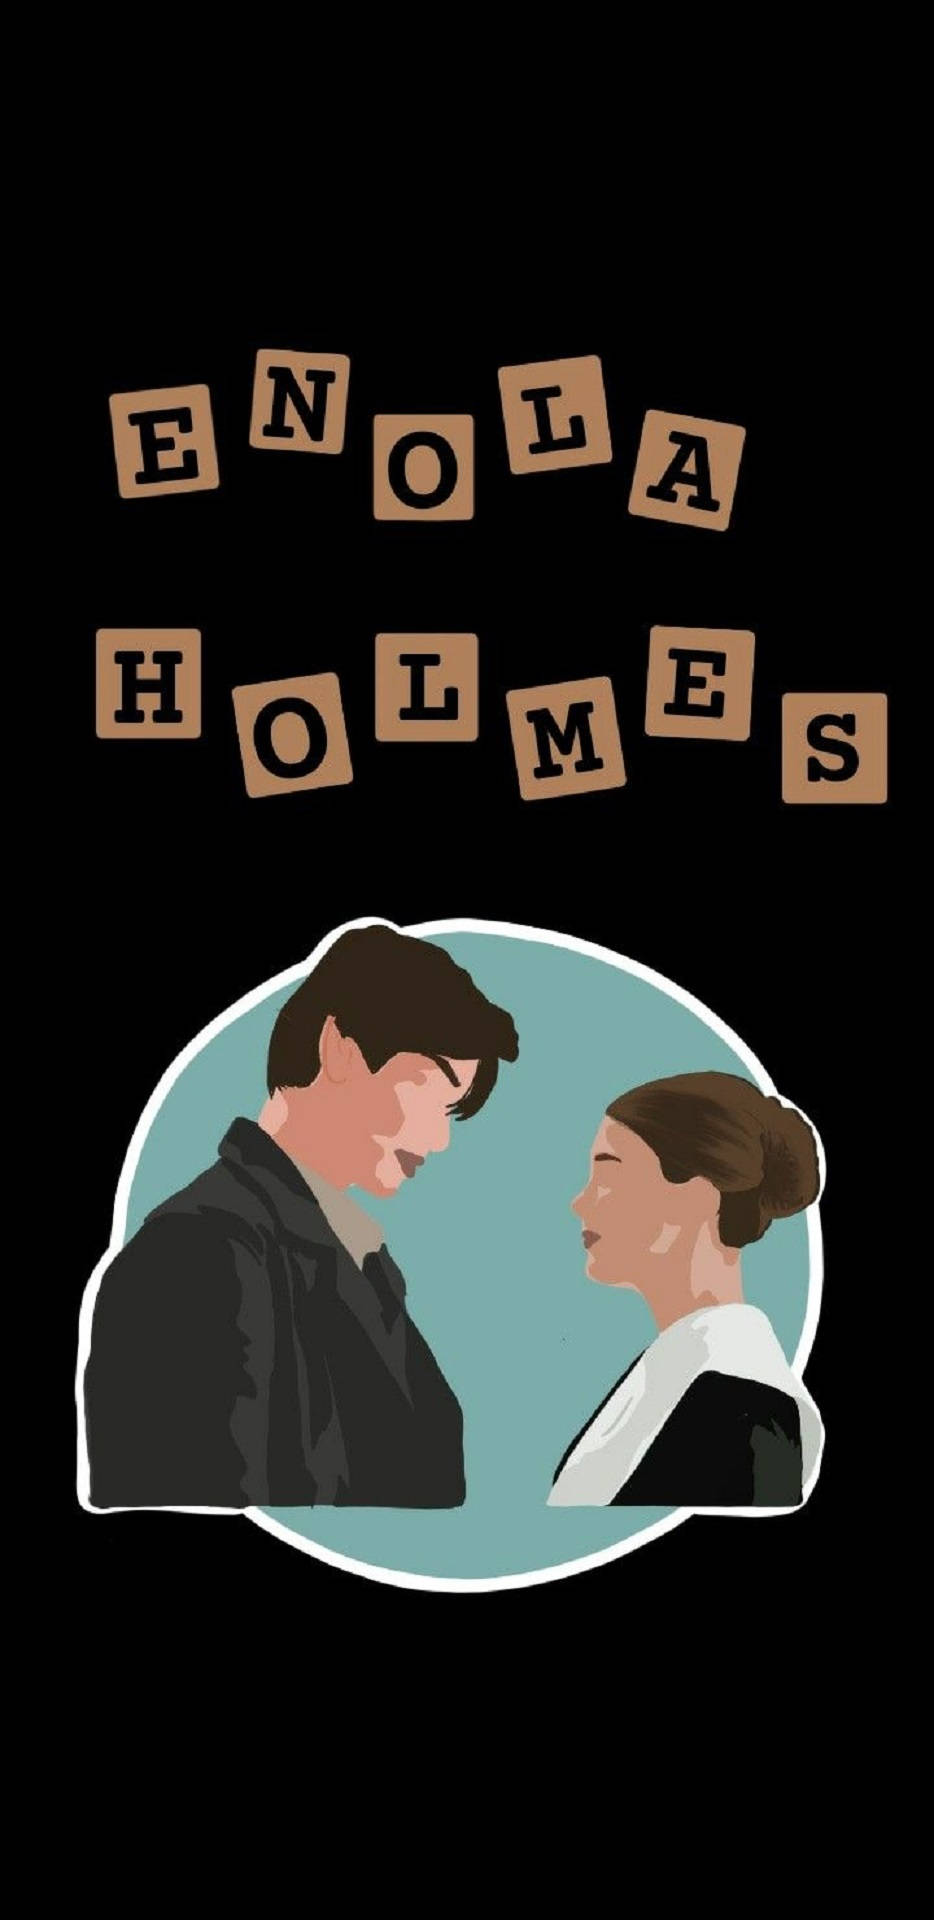 Enola Holmes Fan Art Stickers Background